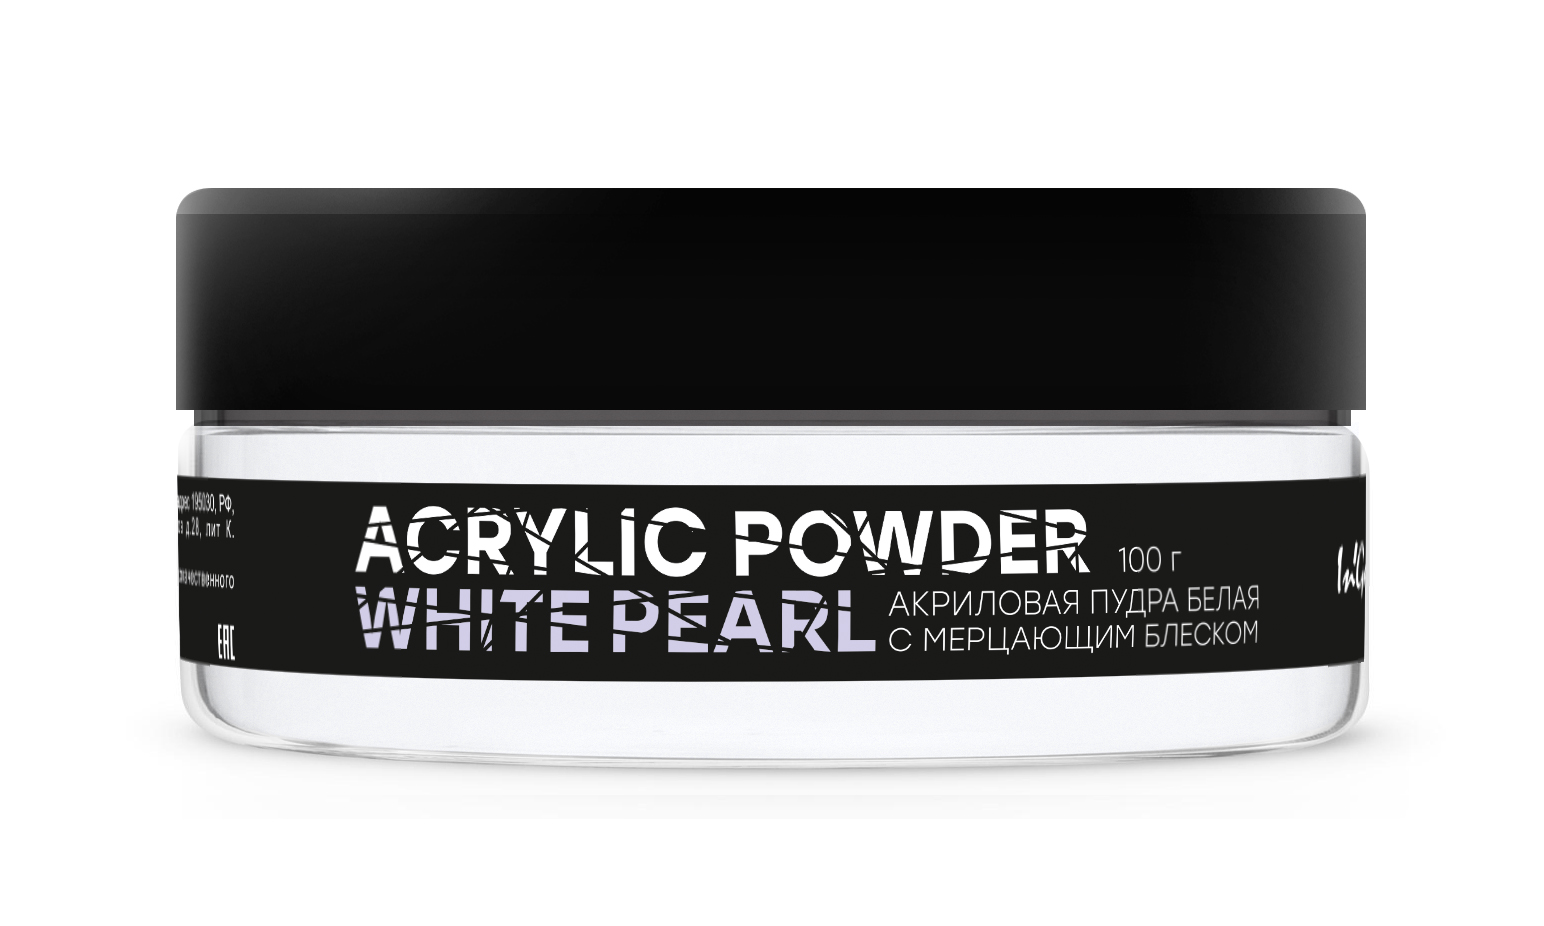 Акриловая пудра белая с мерцанием Acrylic Powder Classic White Pearl, 100 г